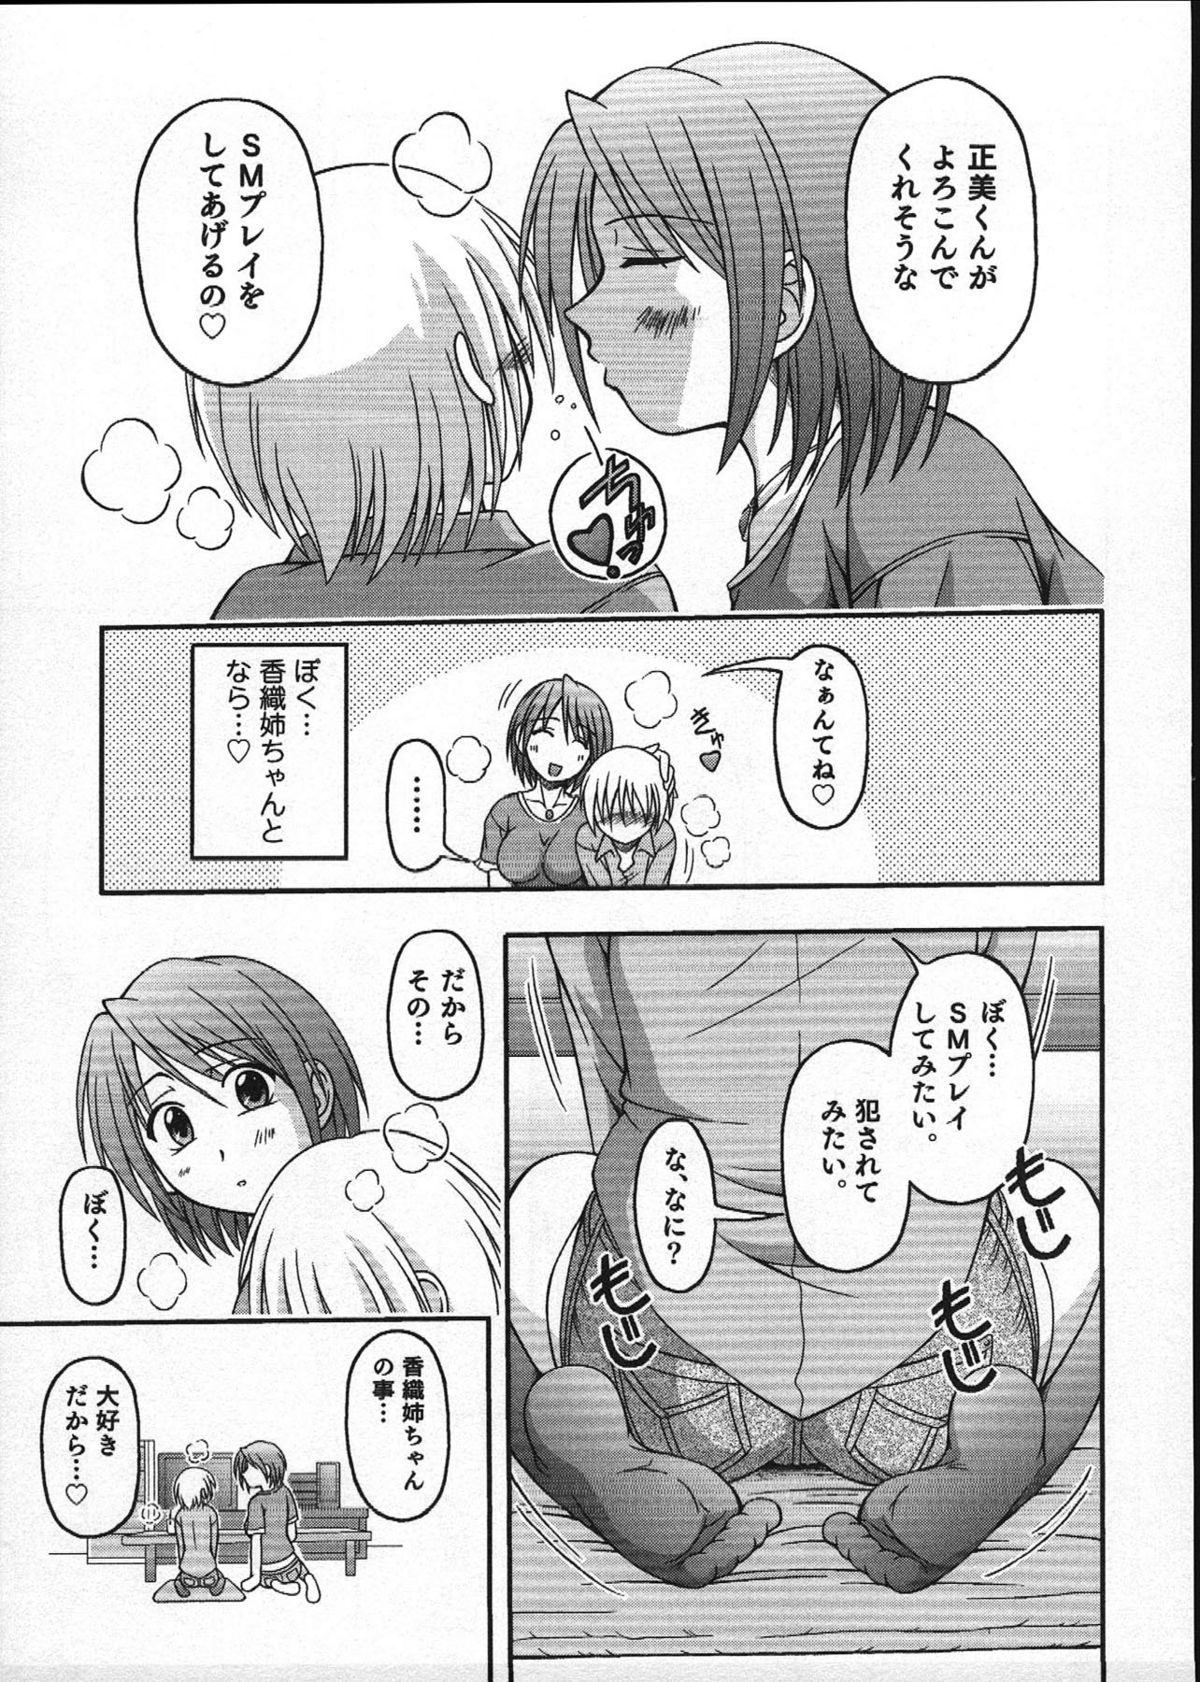 [Anthology] Ero Shota 12 - Sweet Maple Boys page 40 full